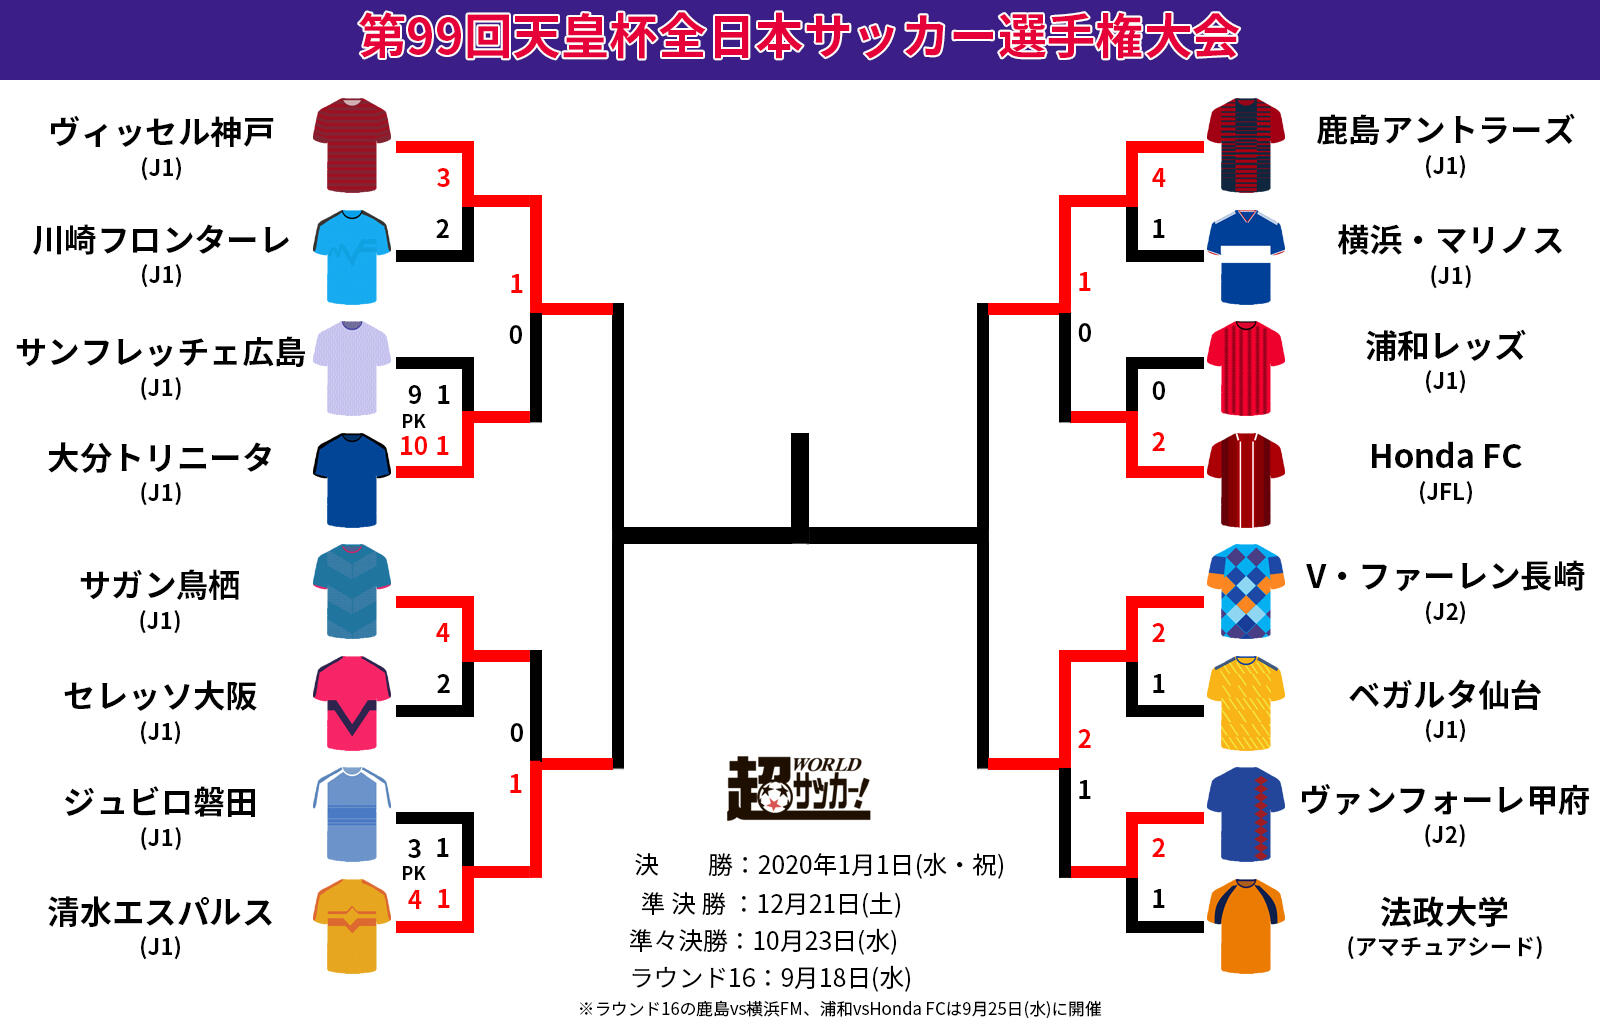 令和最初の天皇杯 ベスト4が決定 J2対決は長崎が勝ち上がり初の4強 天皇杯 超ワールドサッカー